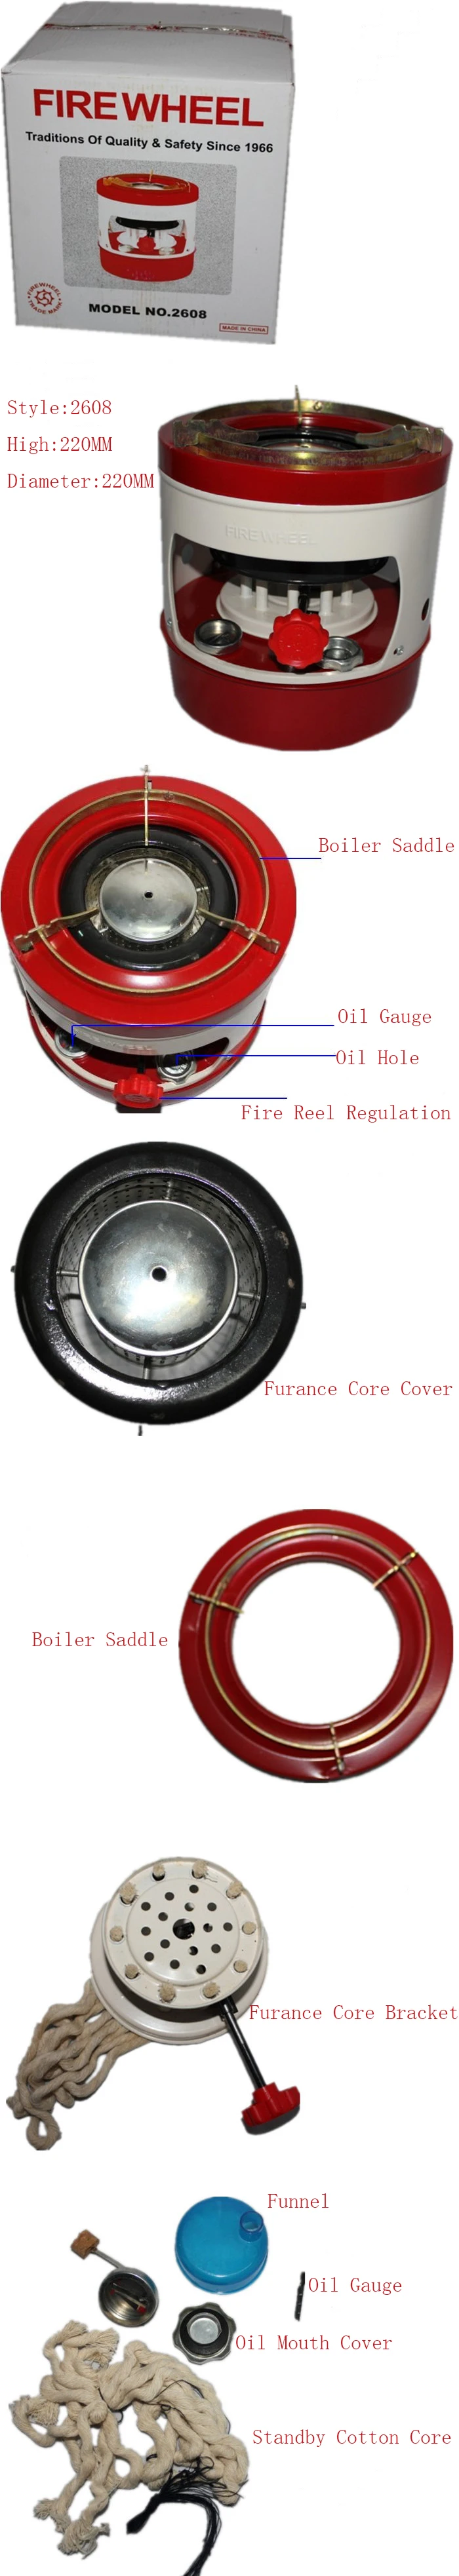 Передовая керосиновая плита Core 3-5 напольная плита типа 2608 цельный стиль простой бездымный и без запаха топливно-эффективный ненасос